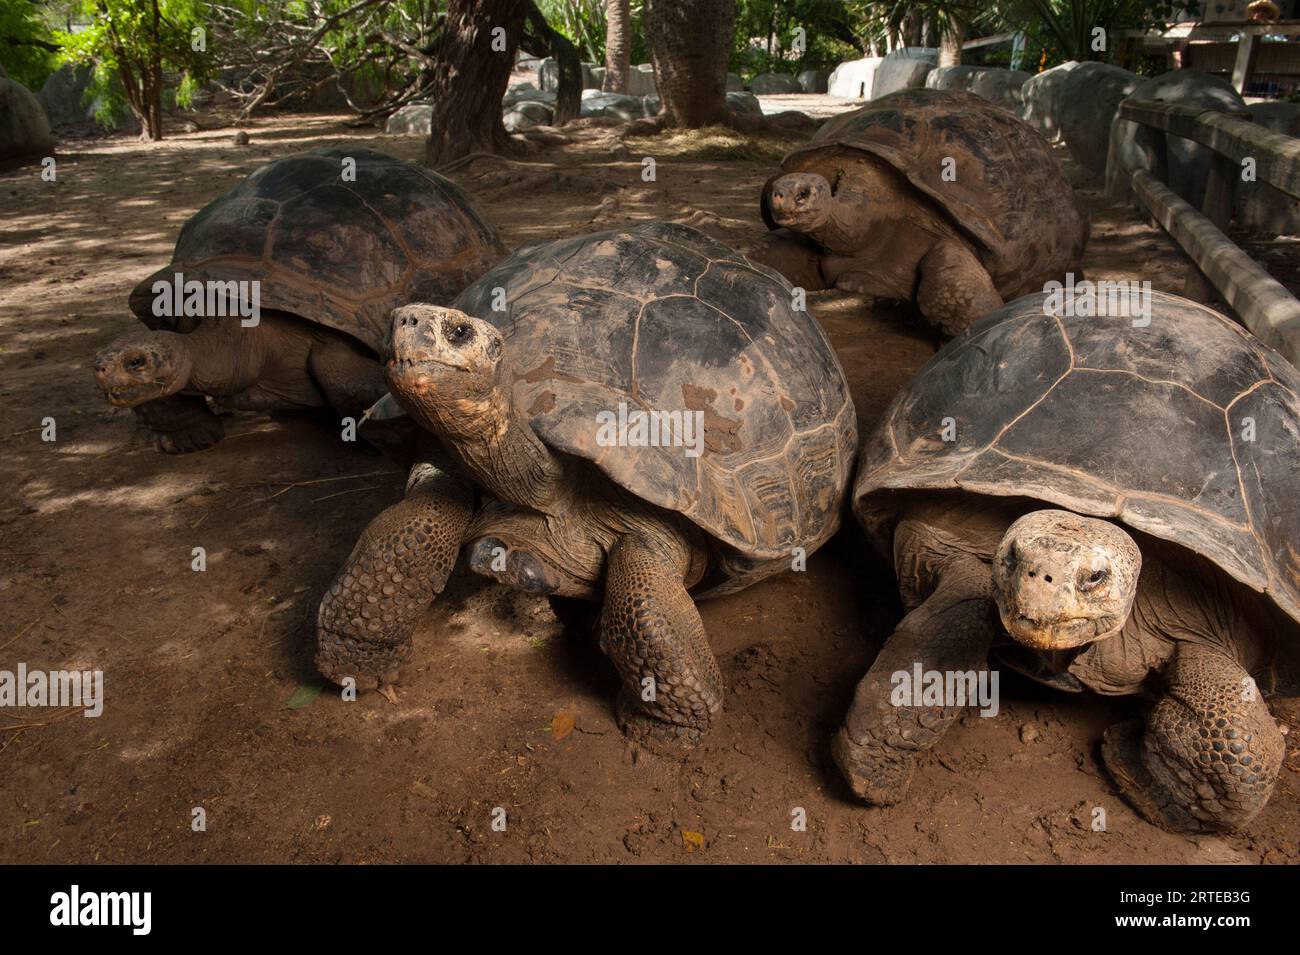 Groupe de tortues des Galapagos (Chelonoidis nigra) dans un enclos d'un zoo ; Brownsville, Texas, États-Unis d'Amérique Banque D'Images